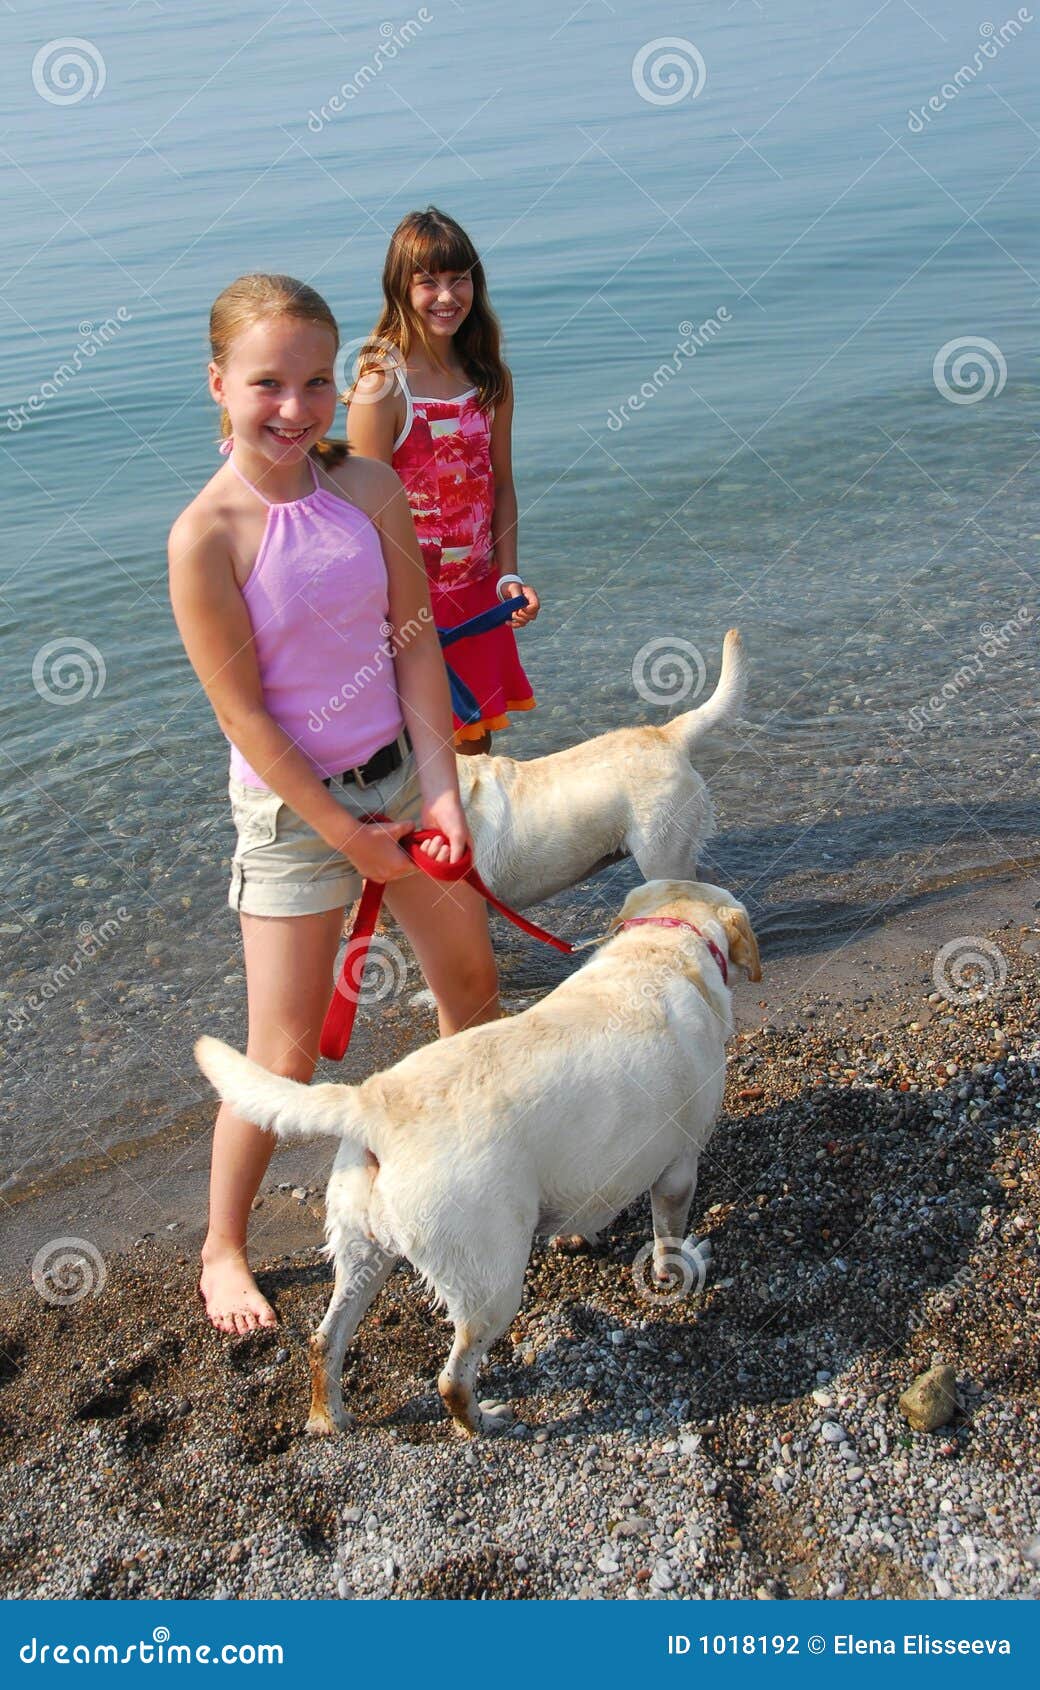 эротика малолетка с собаками фото 4